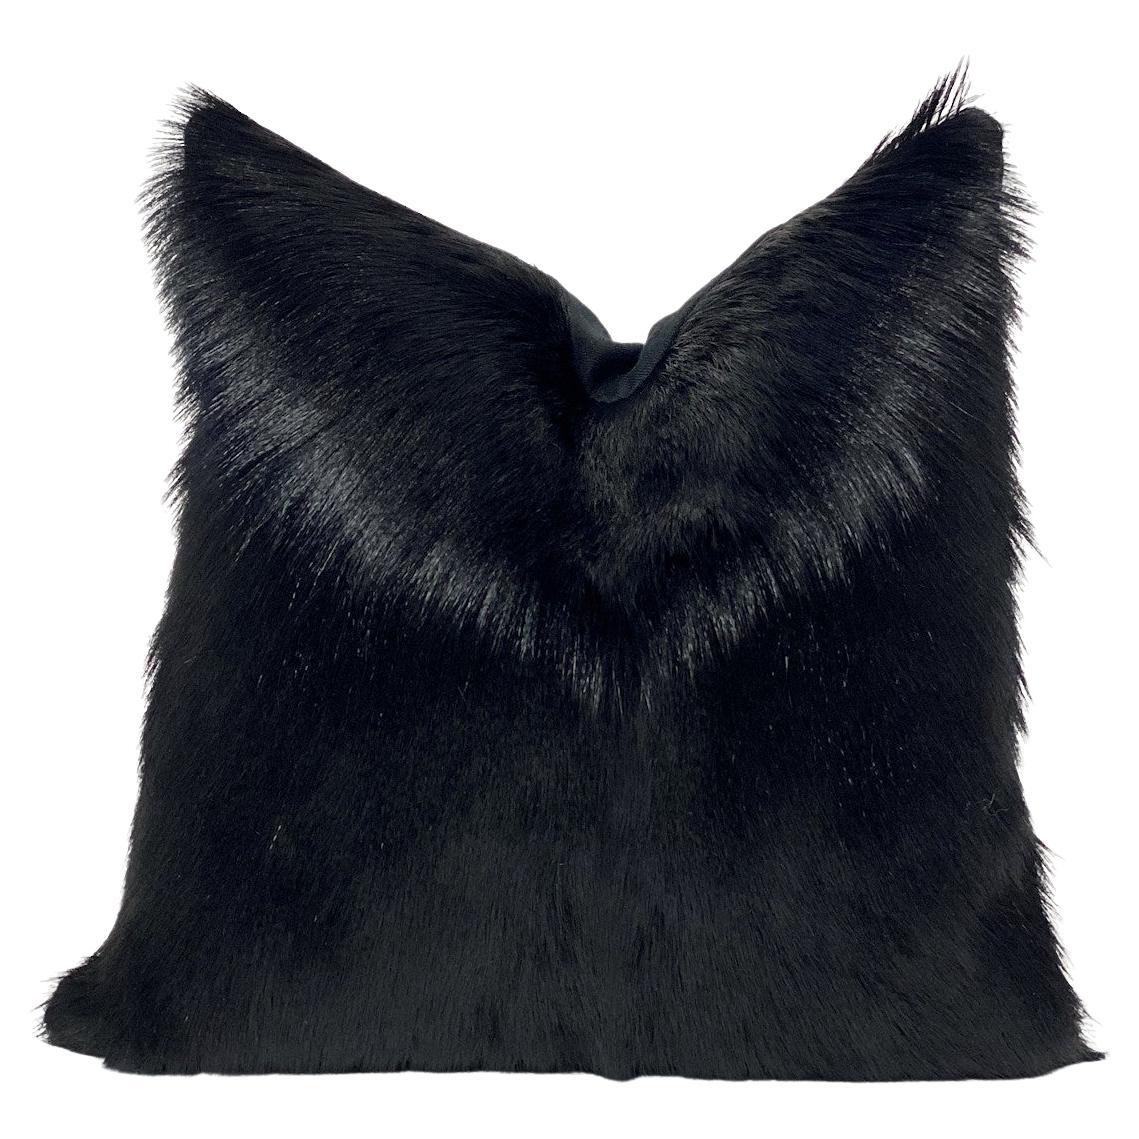 Black Fur Pillow, Goat Hair 18x18"  45x45cm For Sale